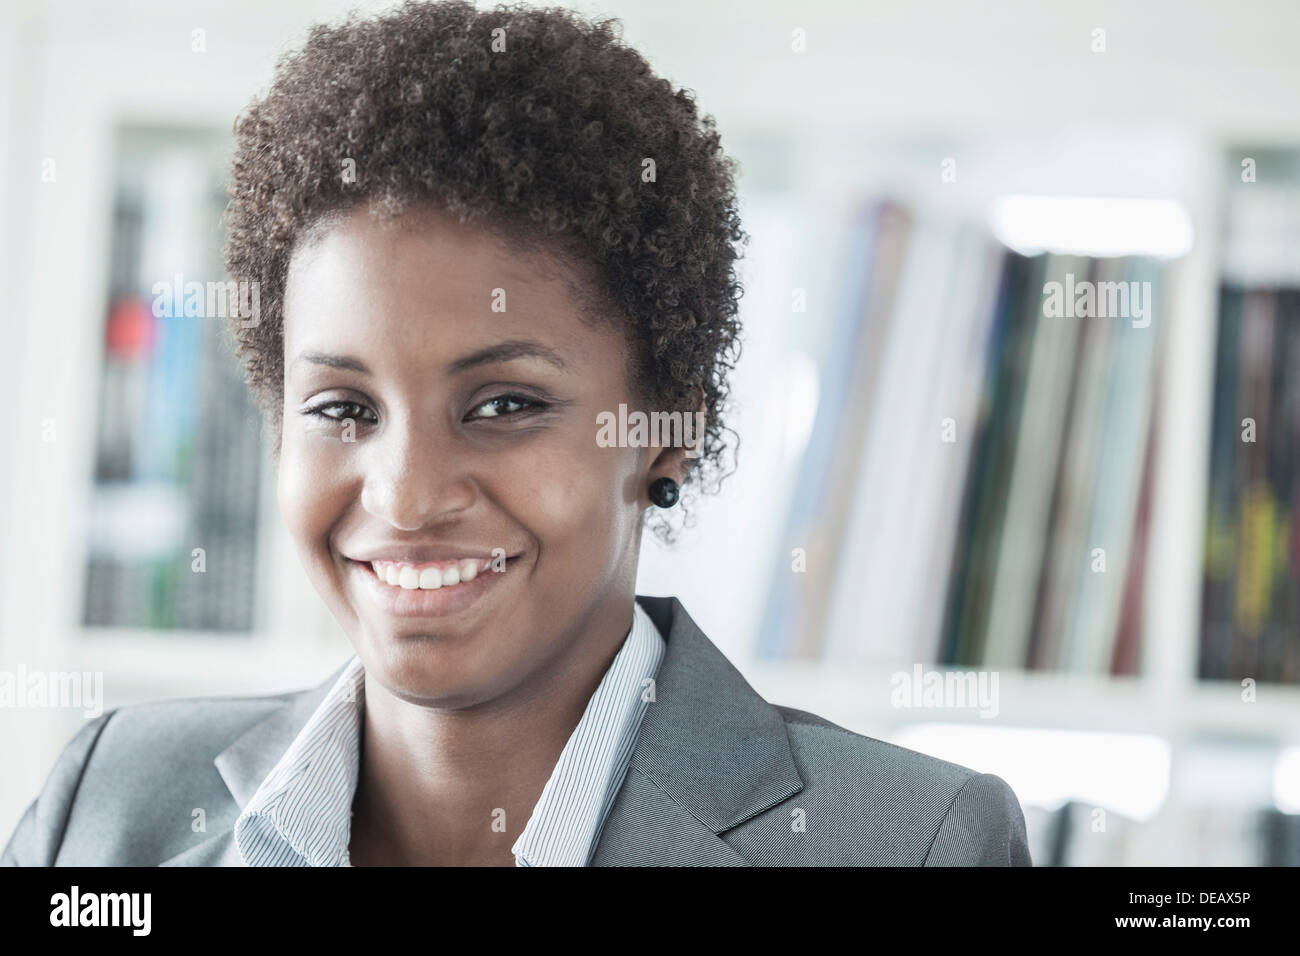 Portrait of smiling young woman avec les cheveux courts à la recherche à l'appareil photo, la tête et épaules Banque D'Images